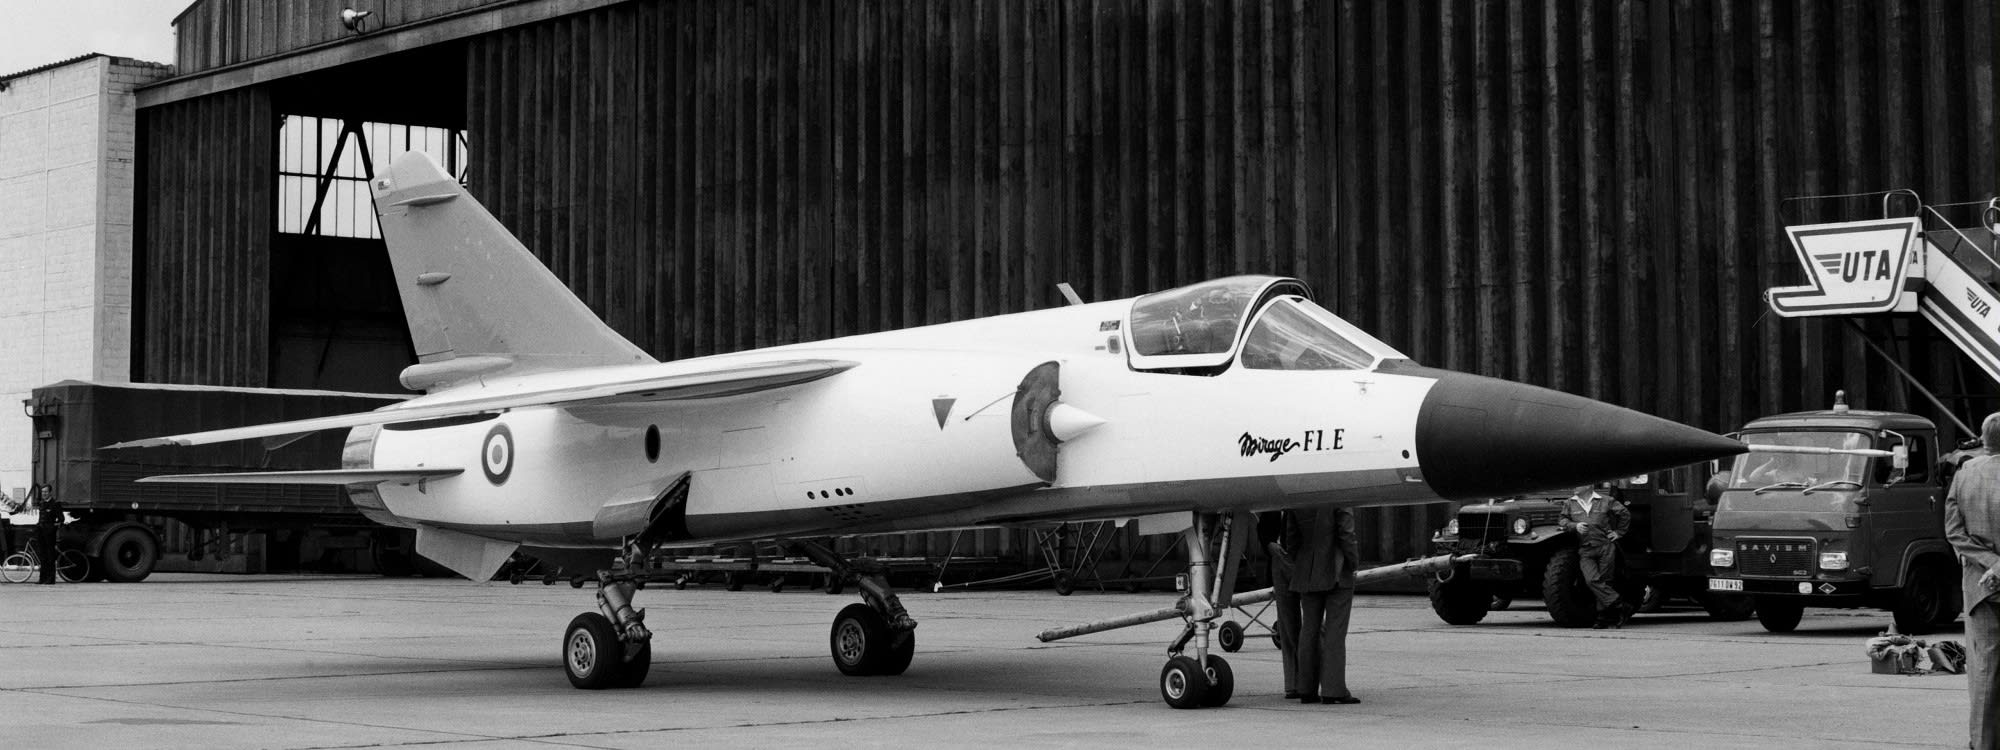 White Mirage F1 E, on the ground. 1975.